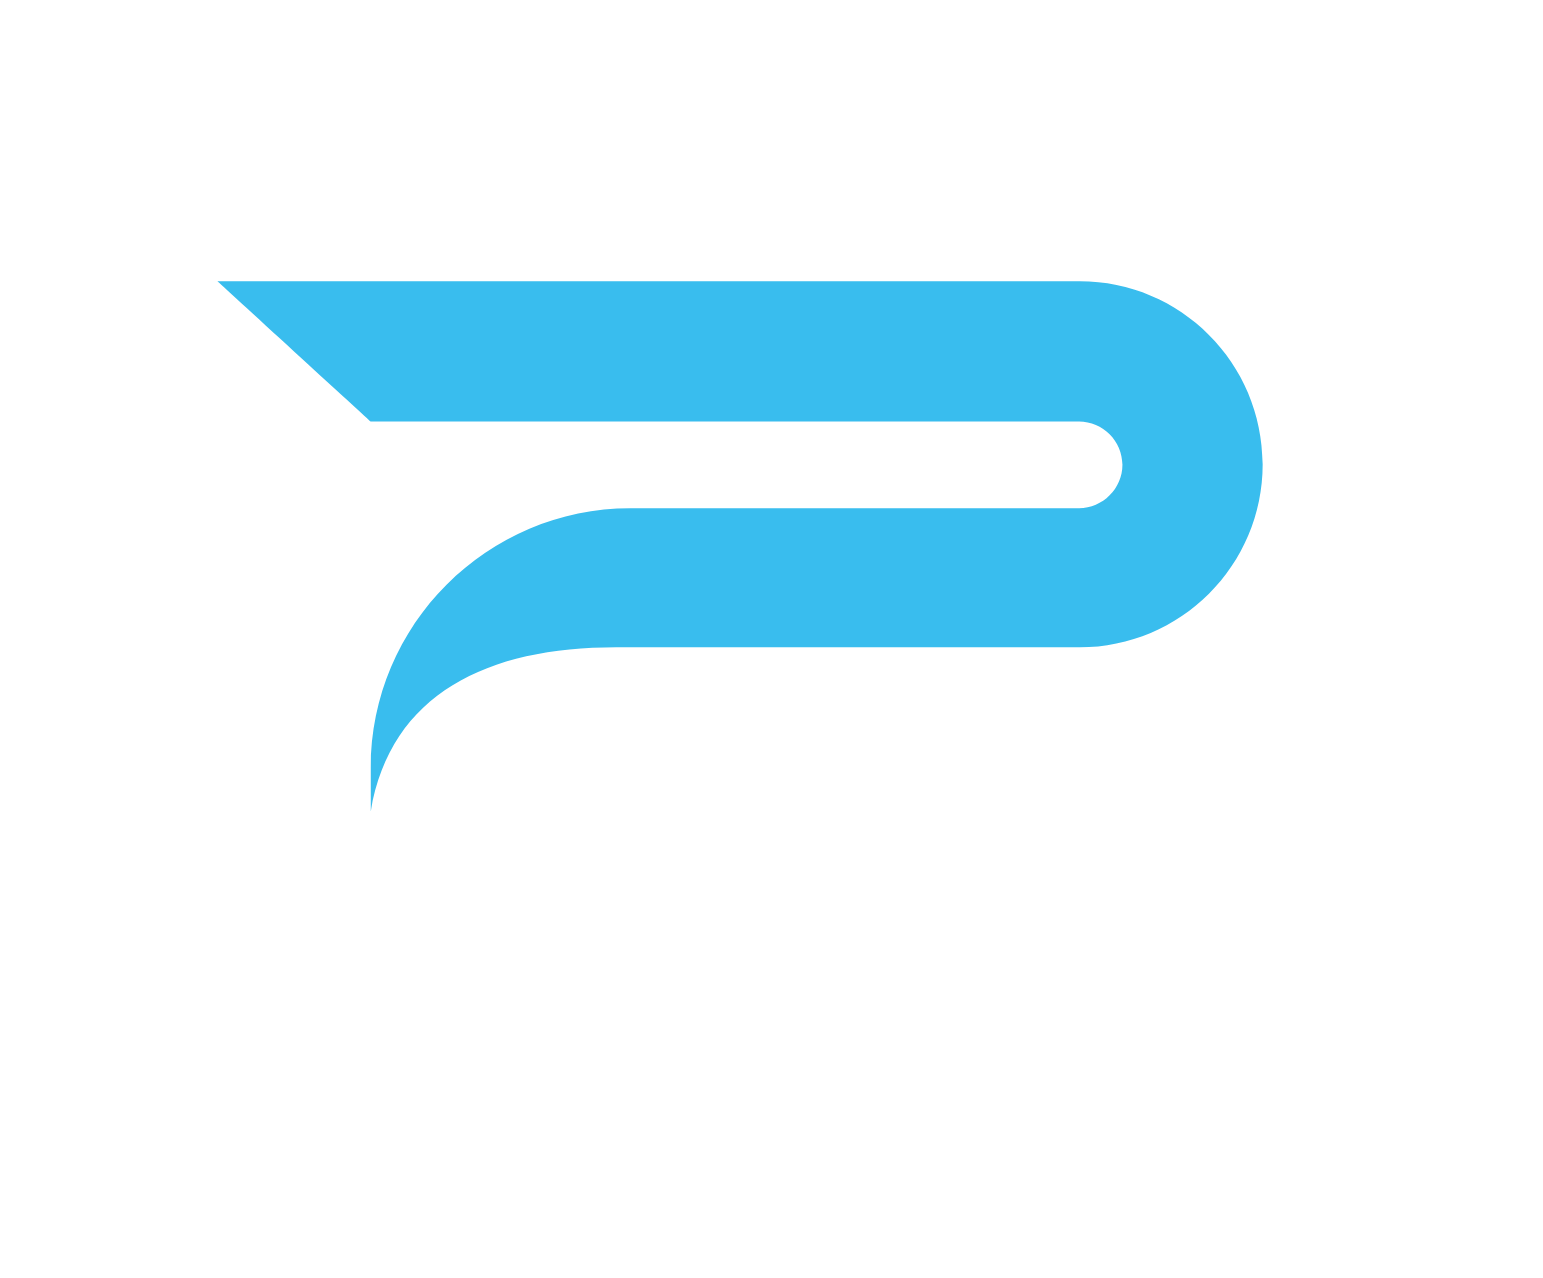 Rekor Systems logo for dark backgrounds (transparent PNG)